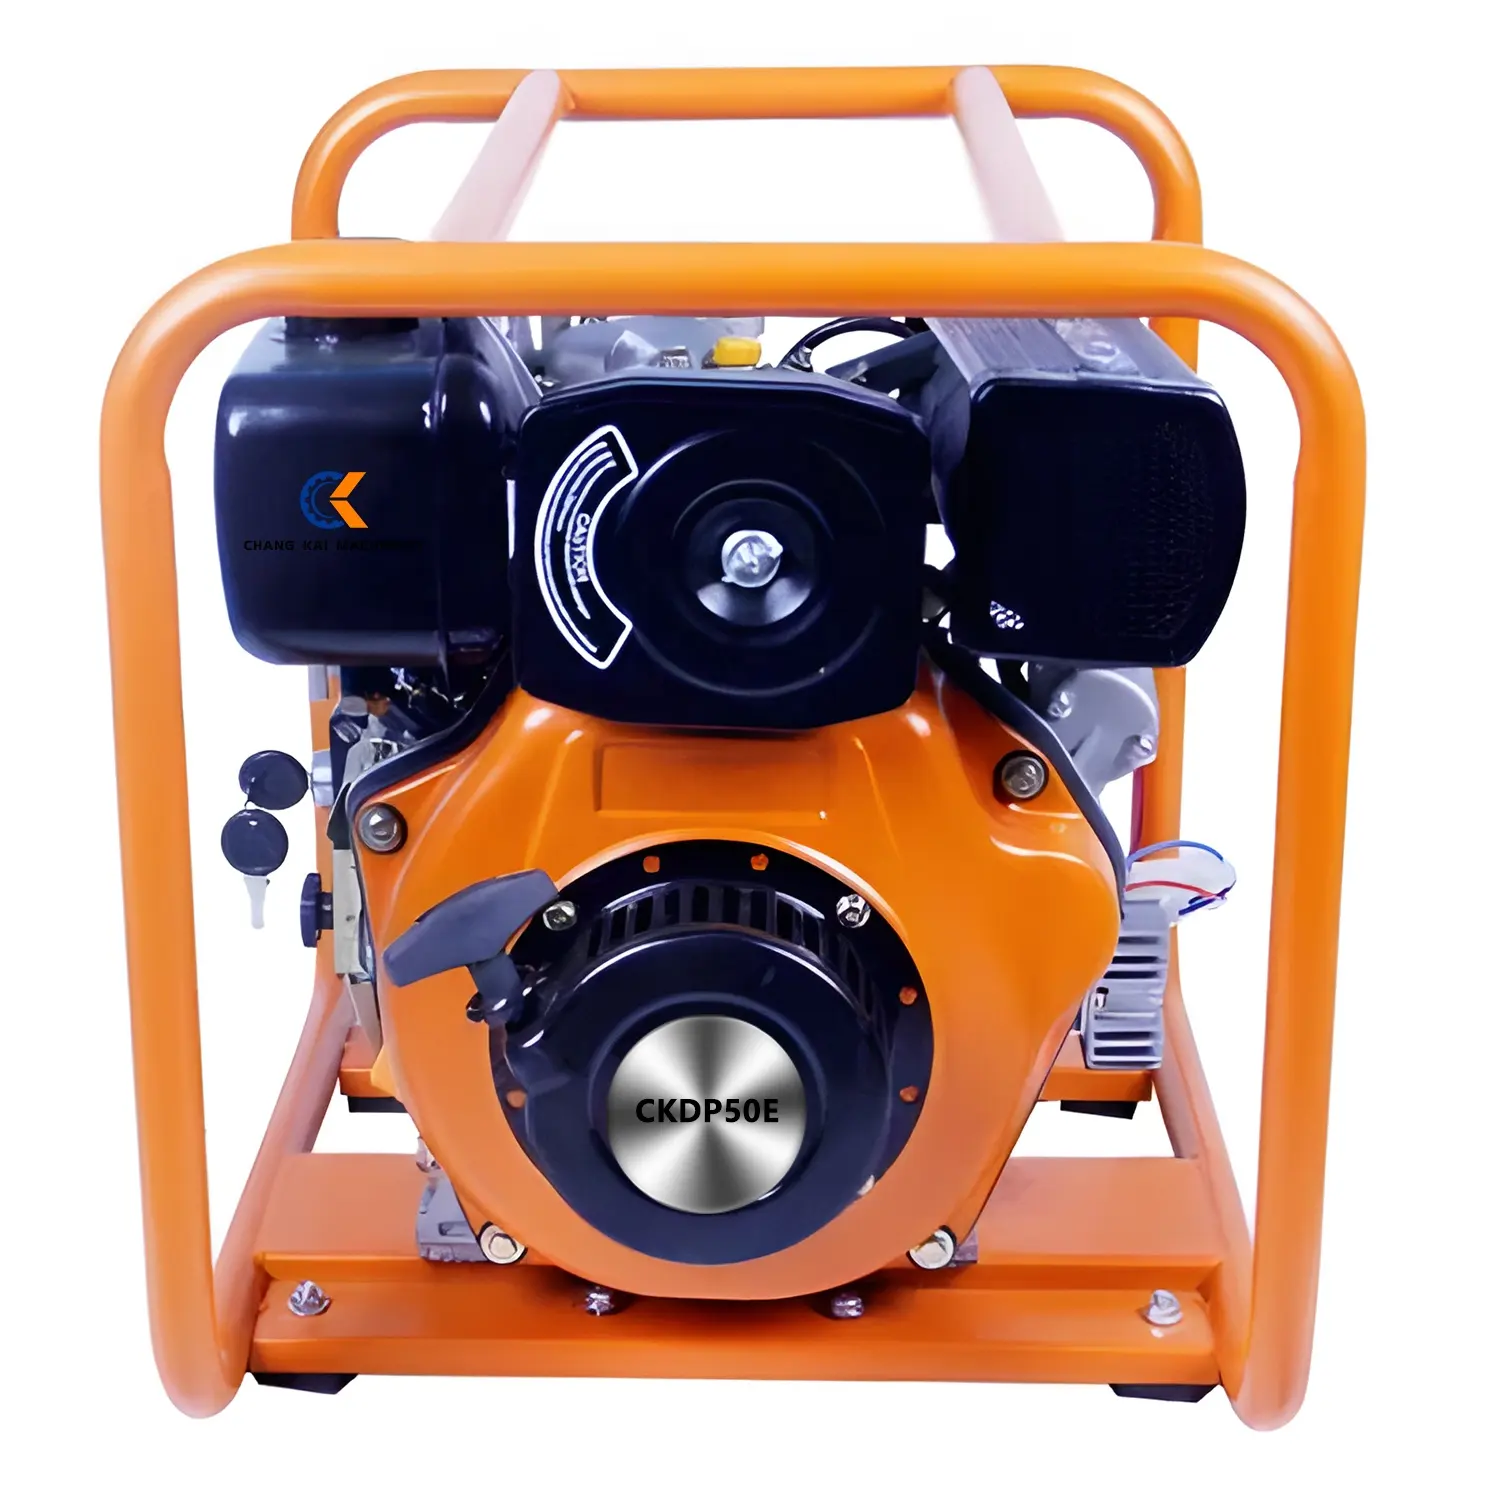 2 pollici diesel pompa acqua pulita produttore DP50 DP50E molto adatto per l'uso in case o ambienti professionali difficili